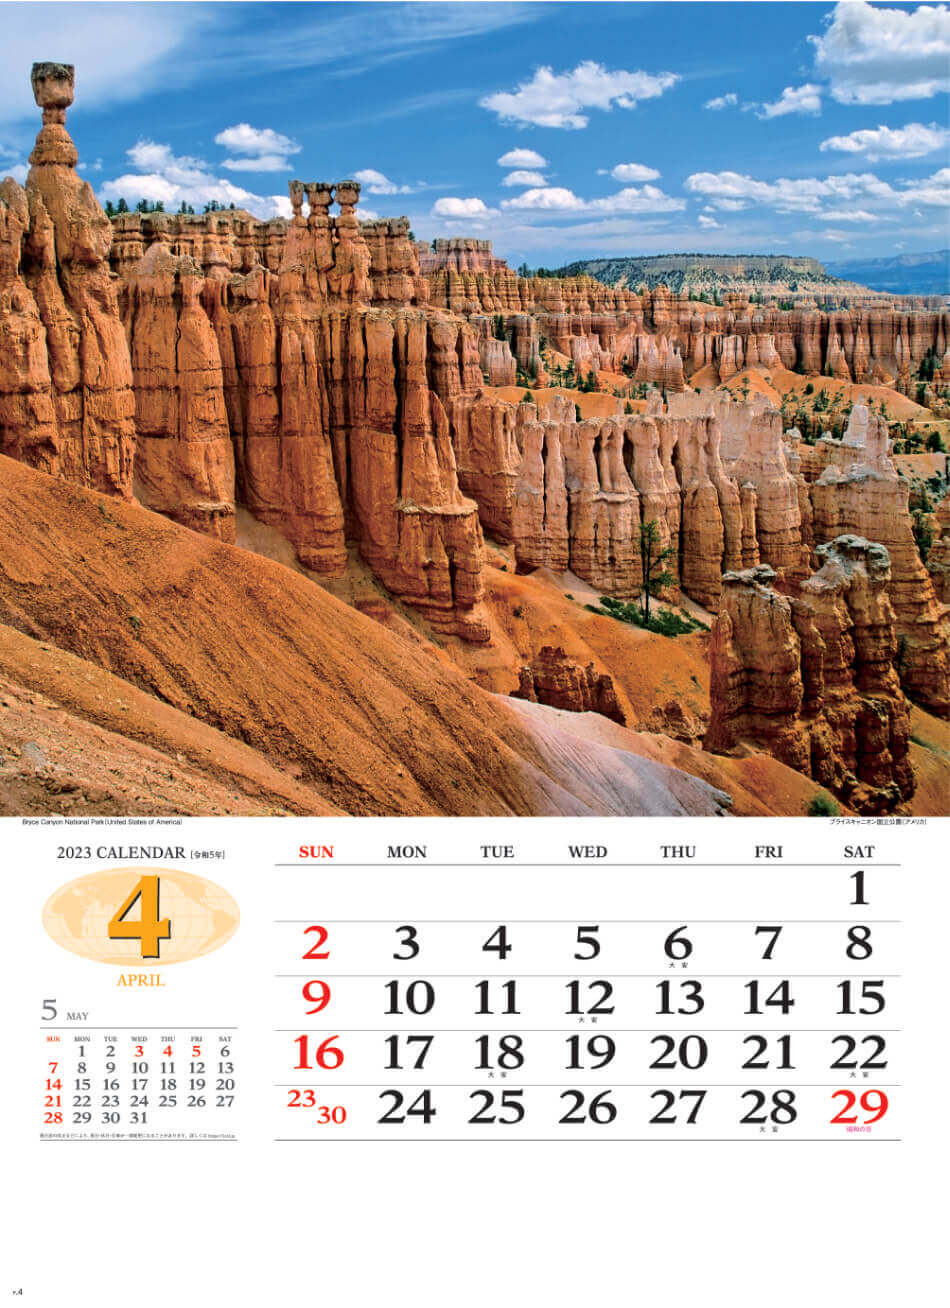 4月 ブライスキャニオン国立公園(アメリカ) 世界の景観 2023年カレンダーの画像